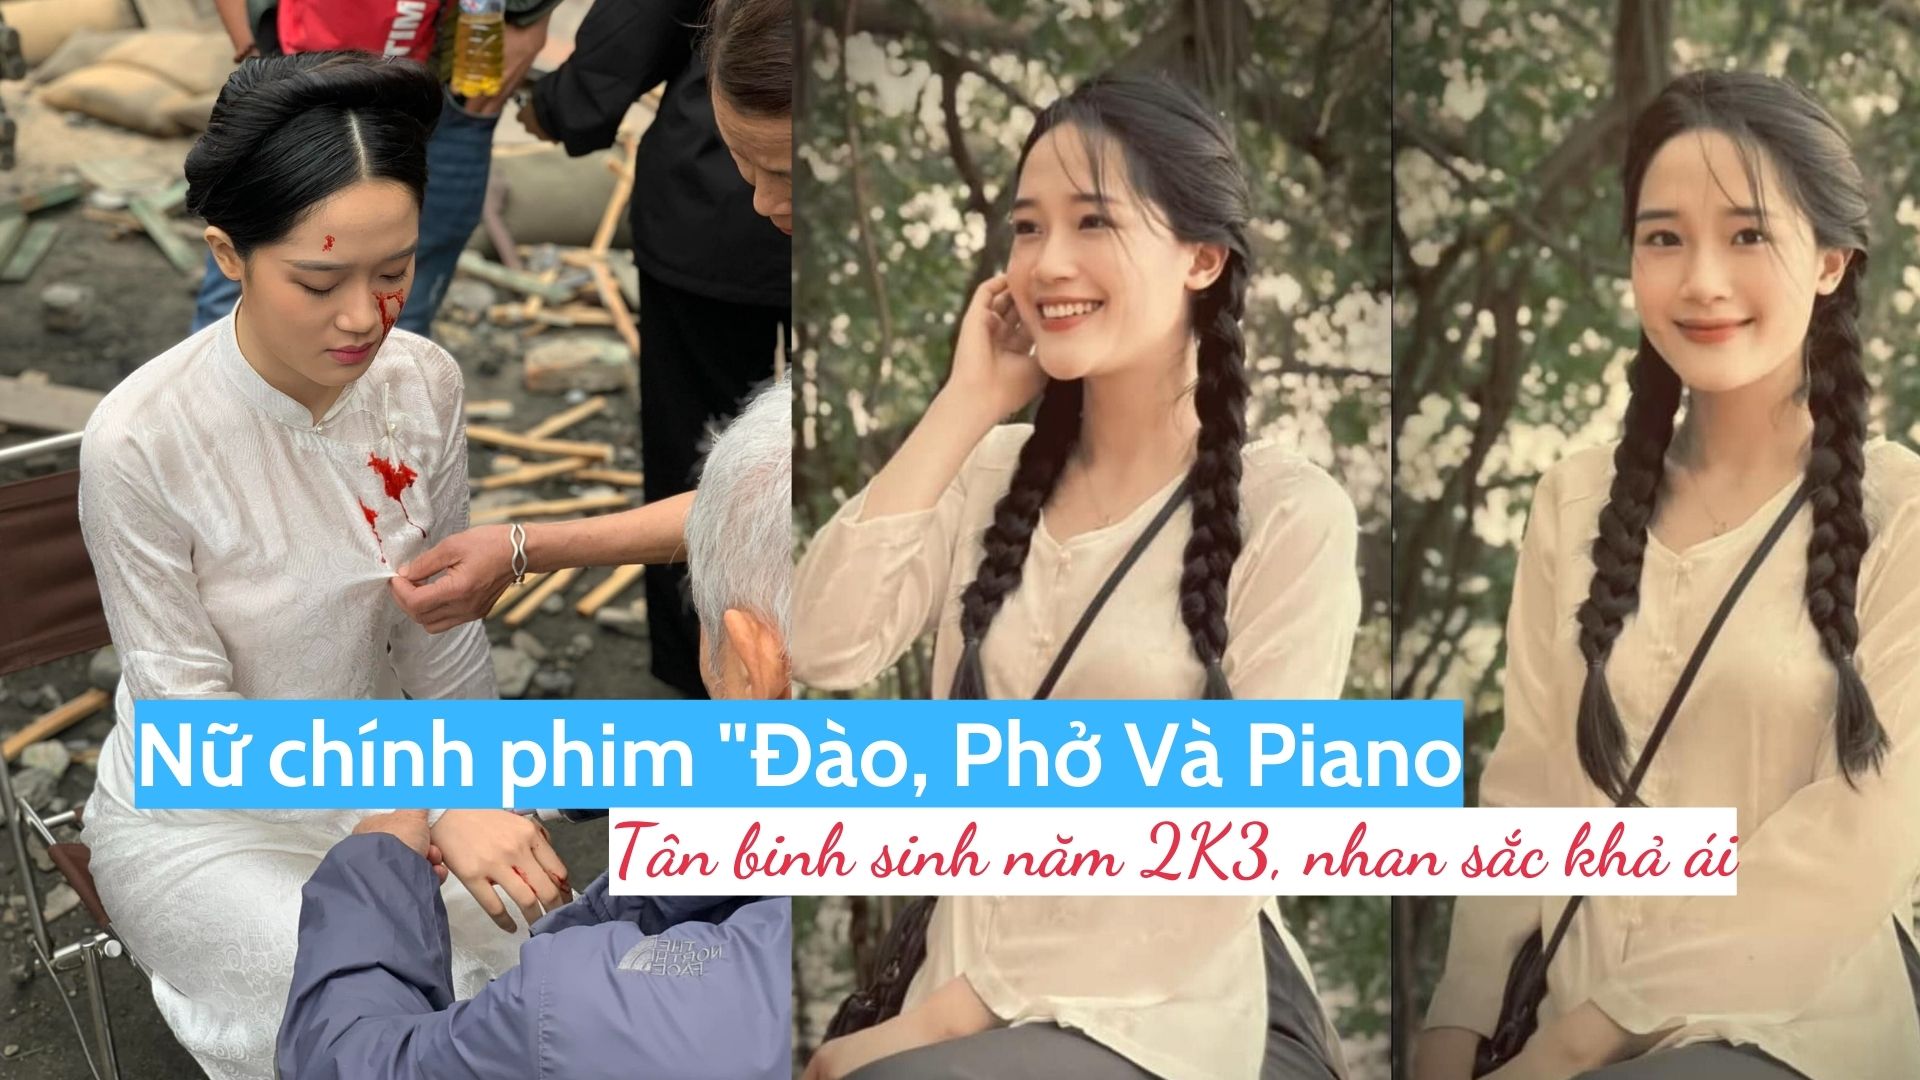 Nữ chính phim "Đào, Phở Và Piano": Tân binh sinh năm 2K3, nhan sắc khả ái